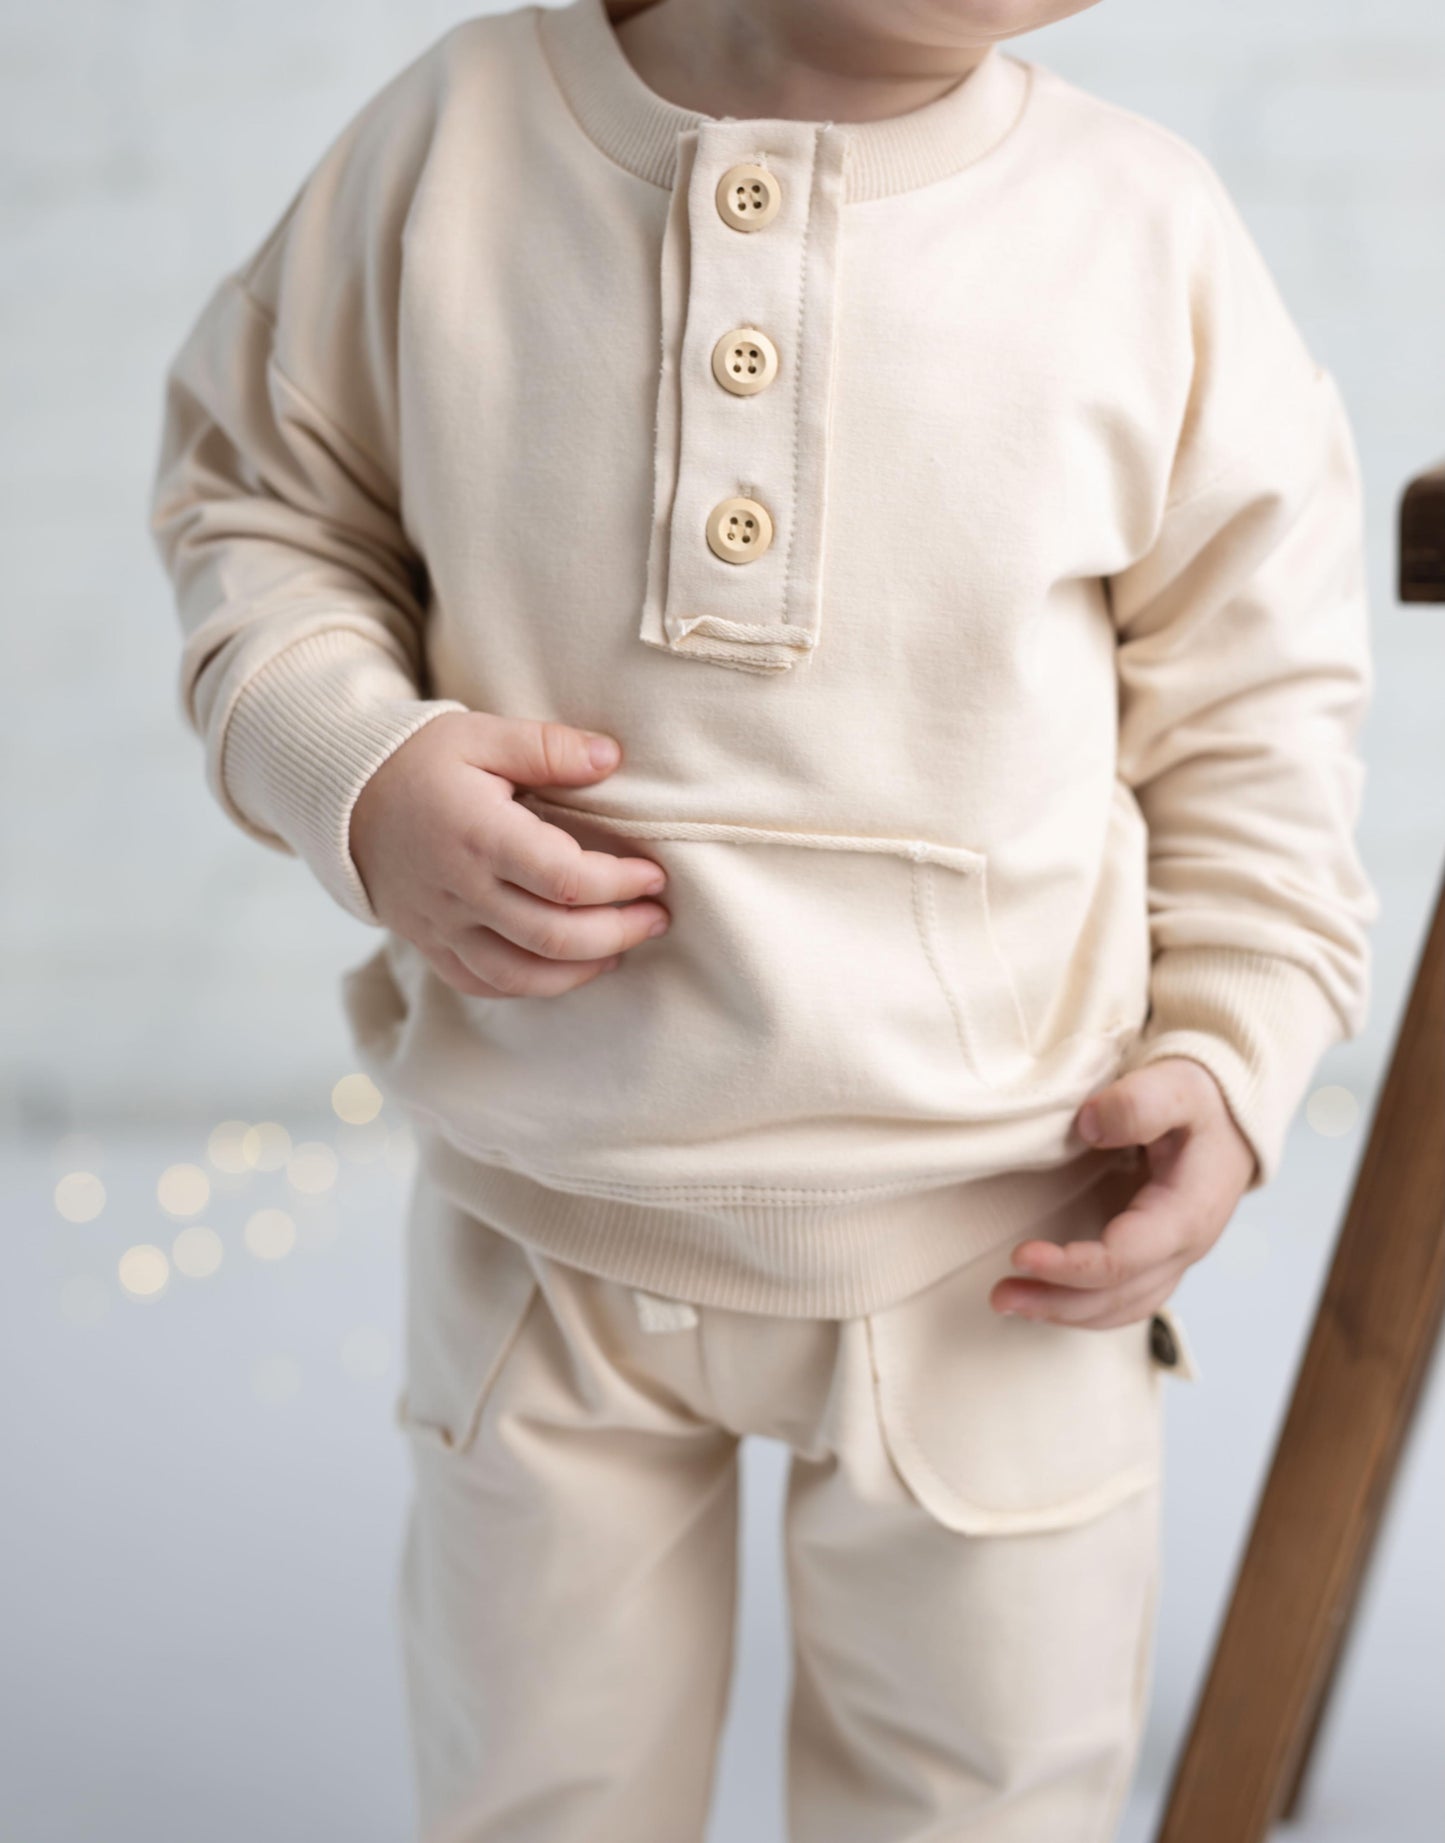 Детский спортивный костюм на пуговицах спереди и шапочка